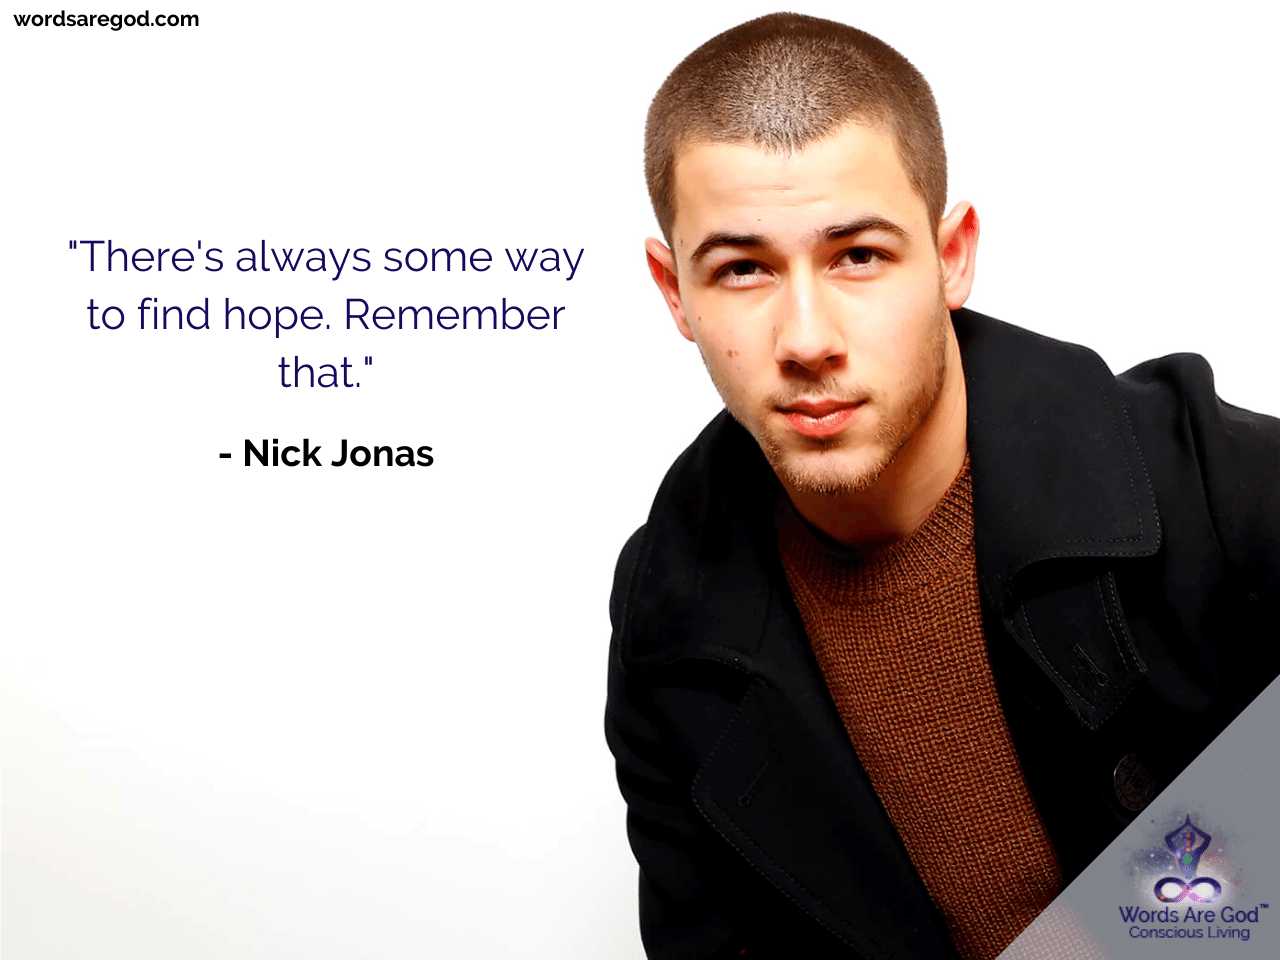 Nick Jonas Motivational Quote by Nick Jonas